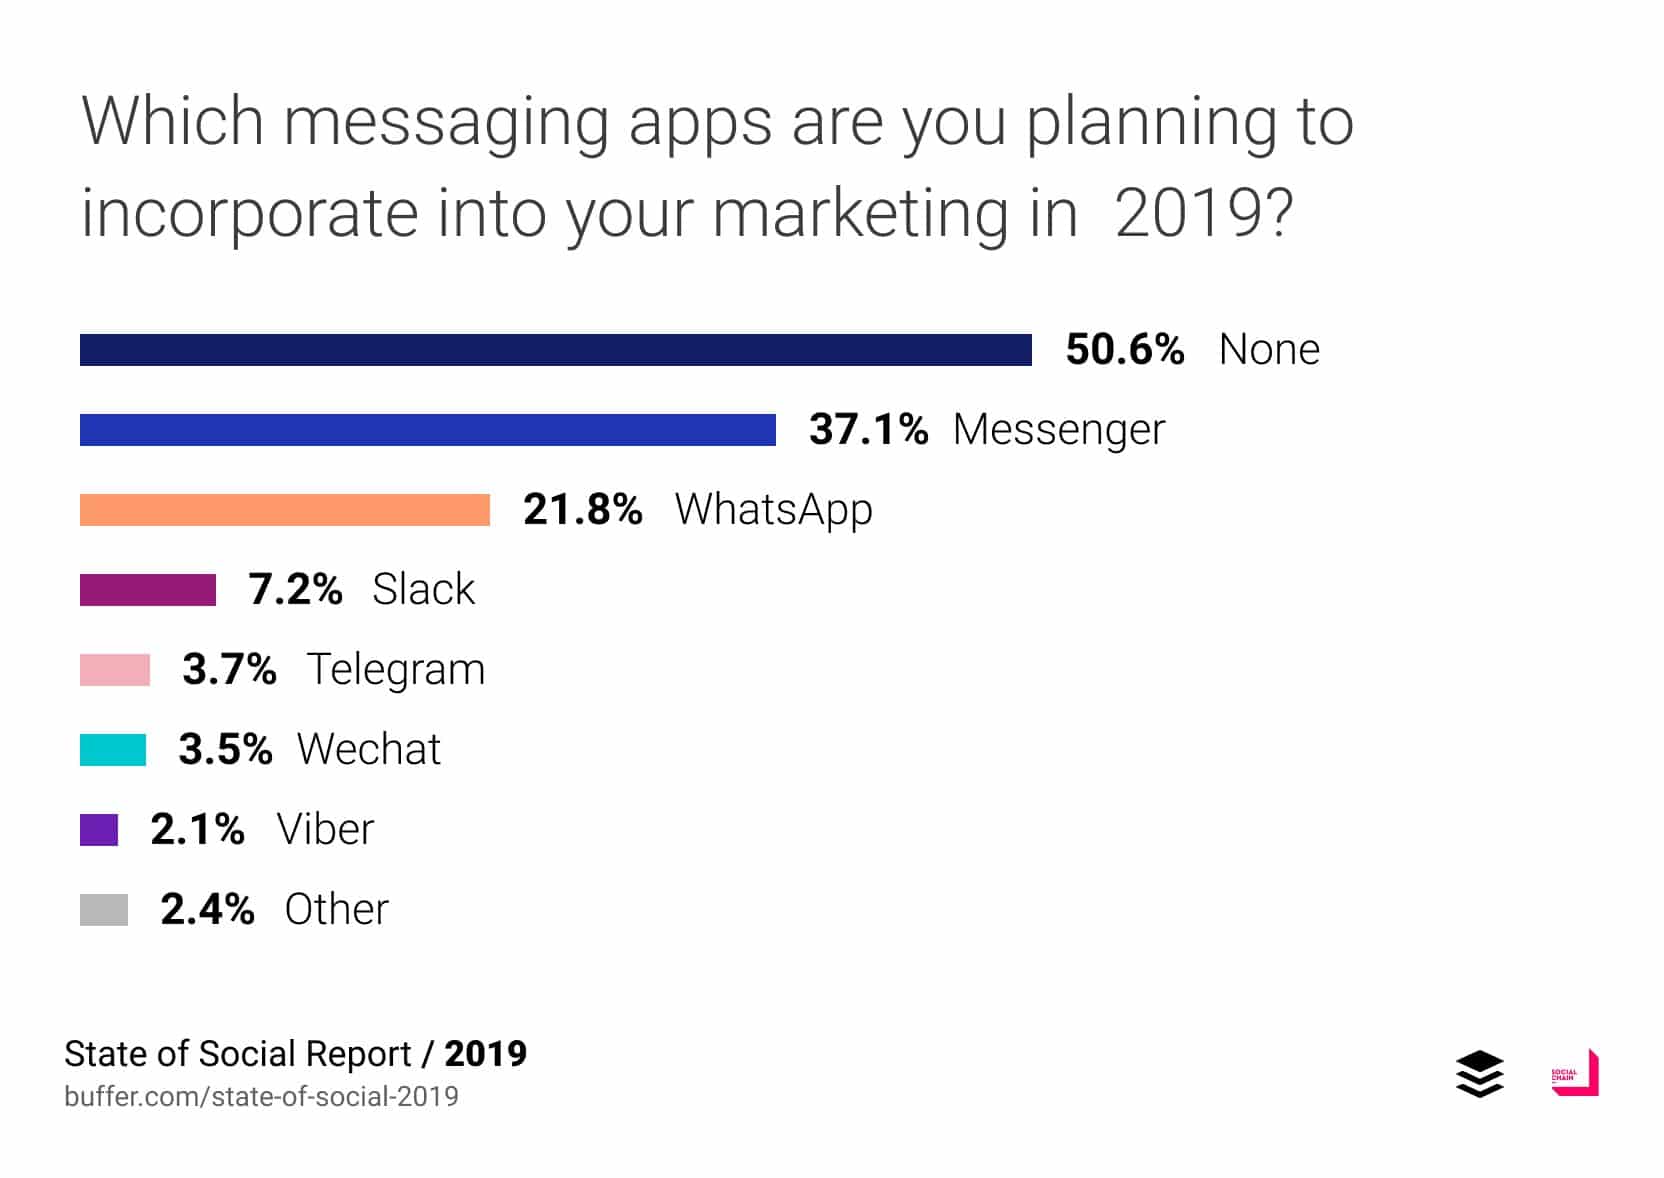 Les applications de messageries que les entreprises prévoient d'utiliser en 2019 selon Buffer